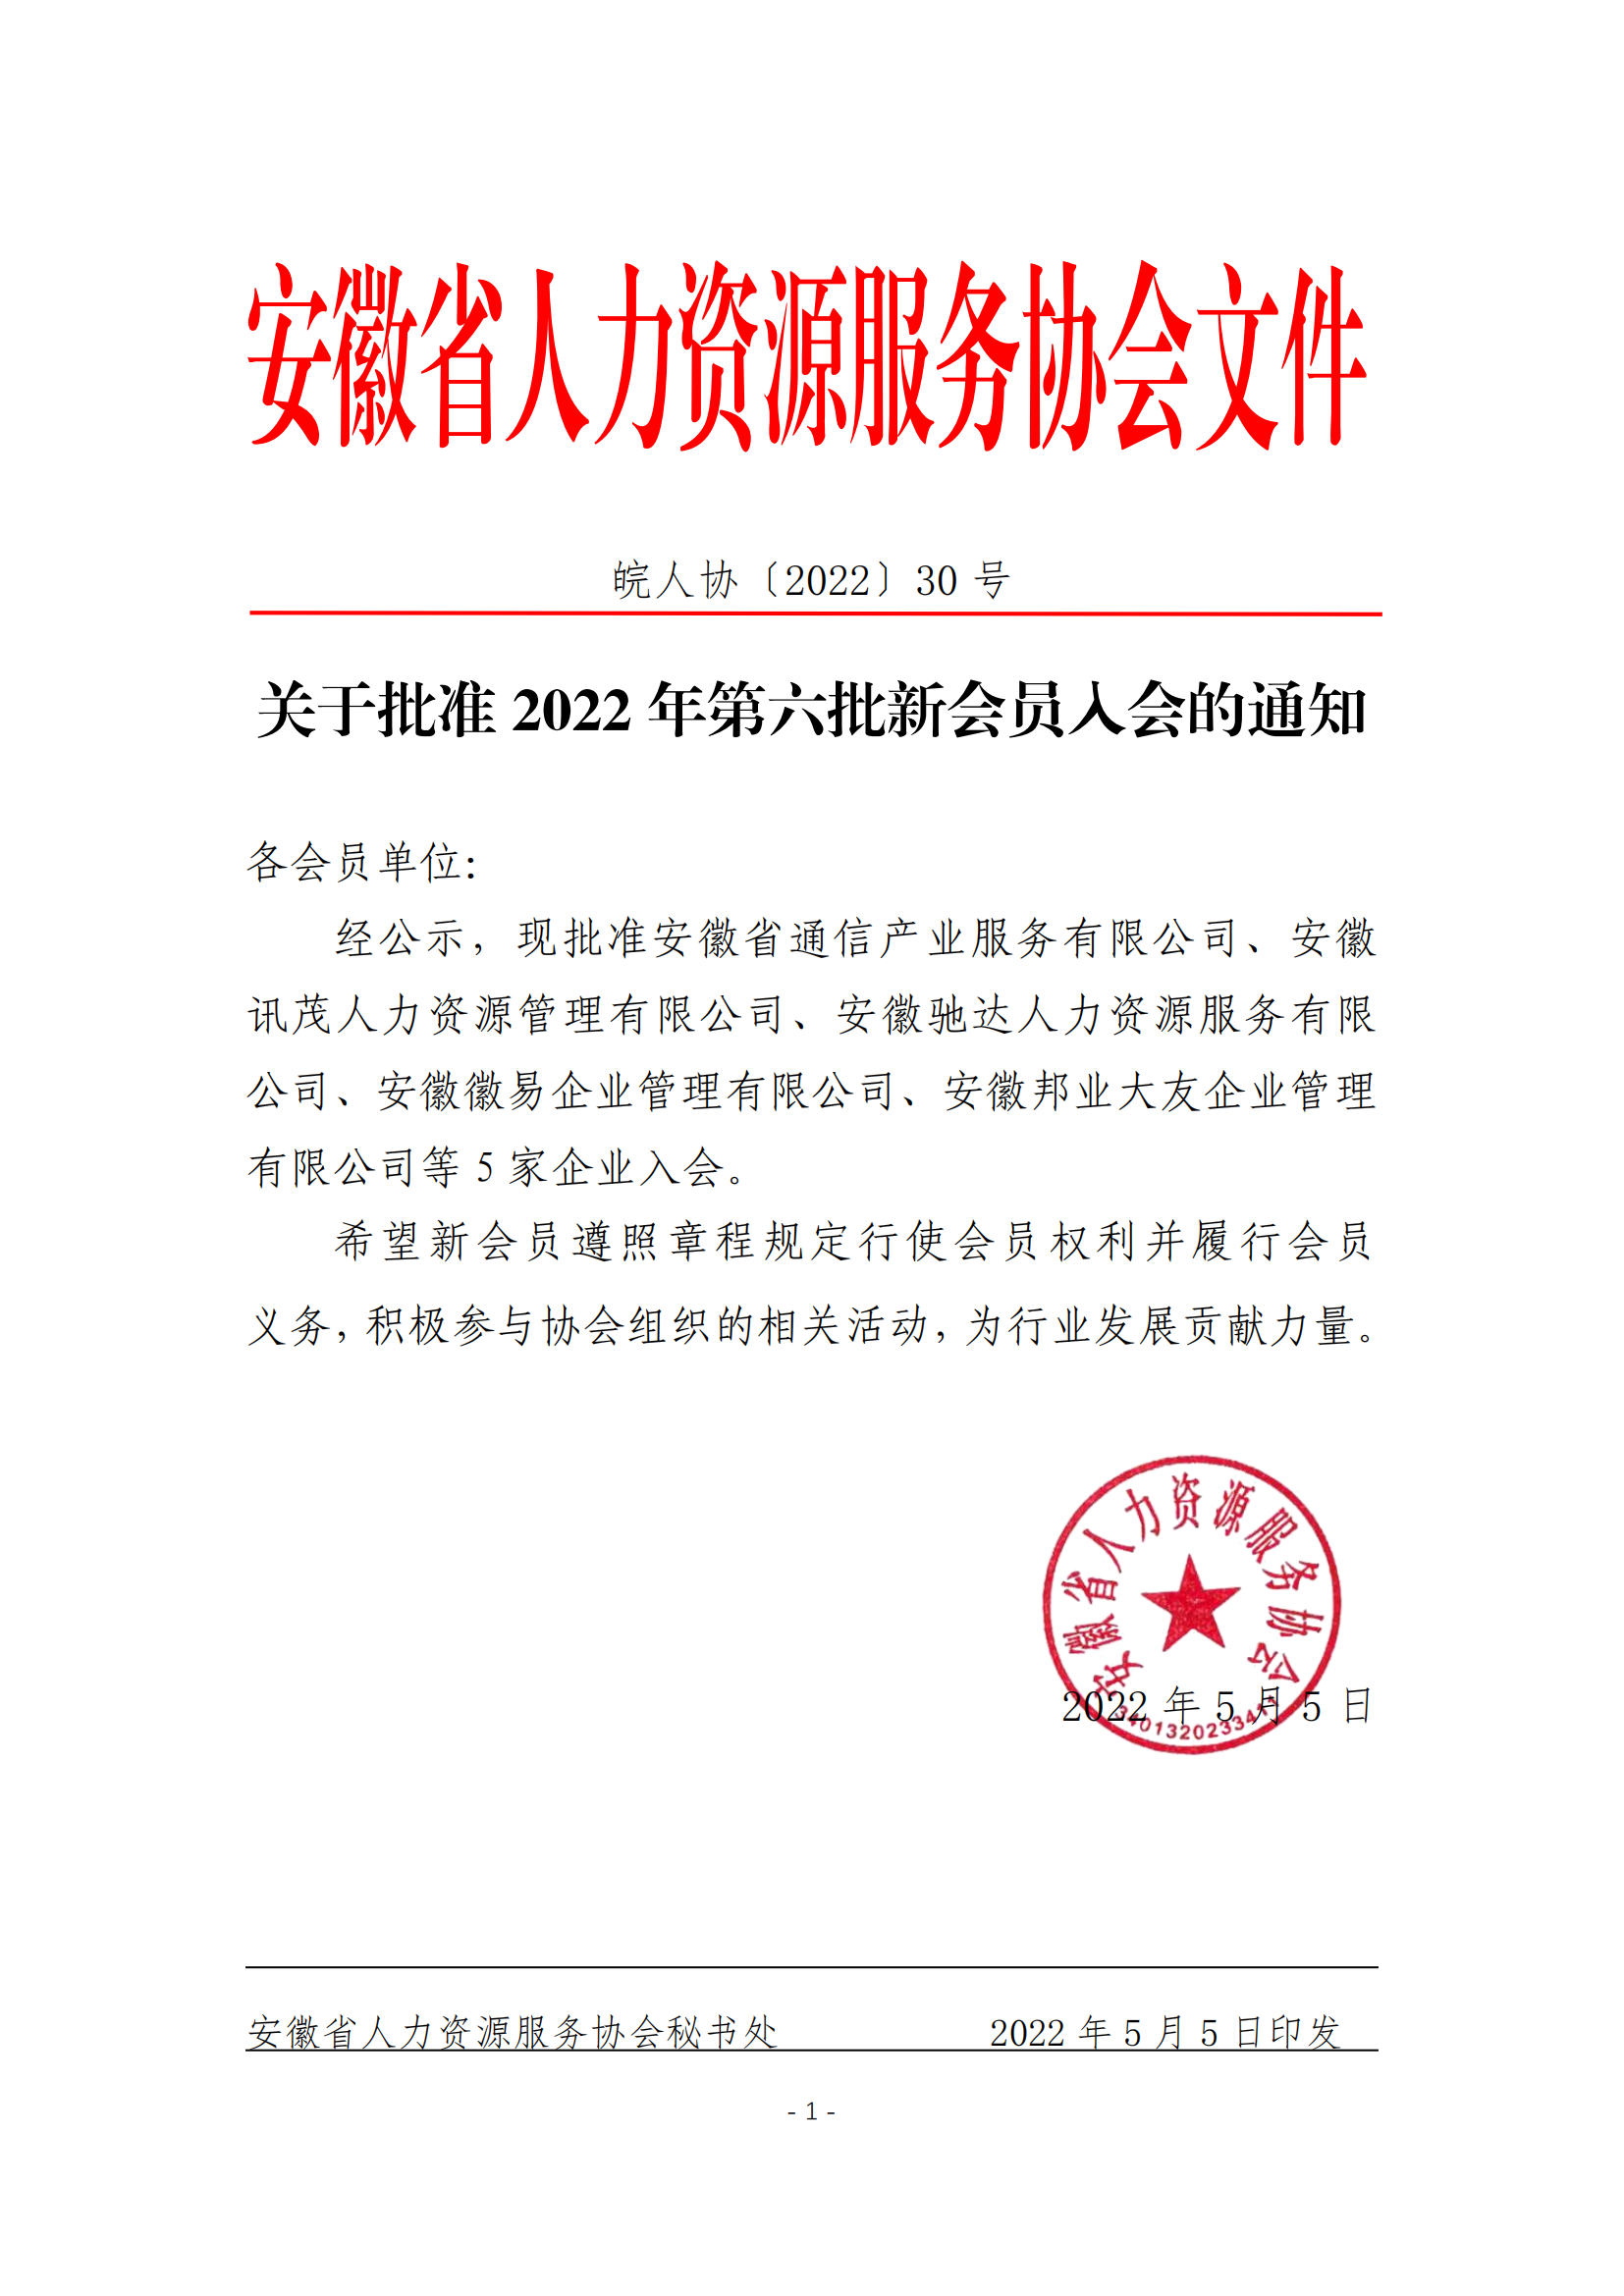 皖人协（2022）30号，关于批准2022年第六批新会员入会的通知_00.png